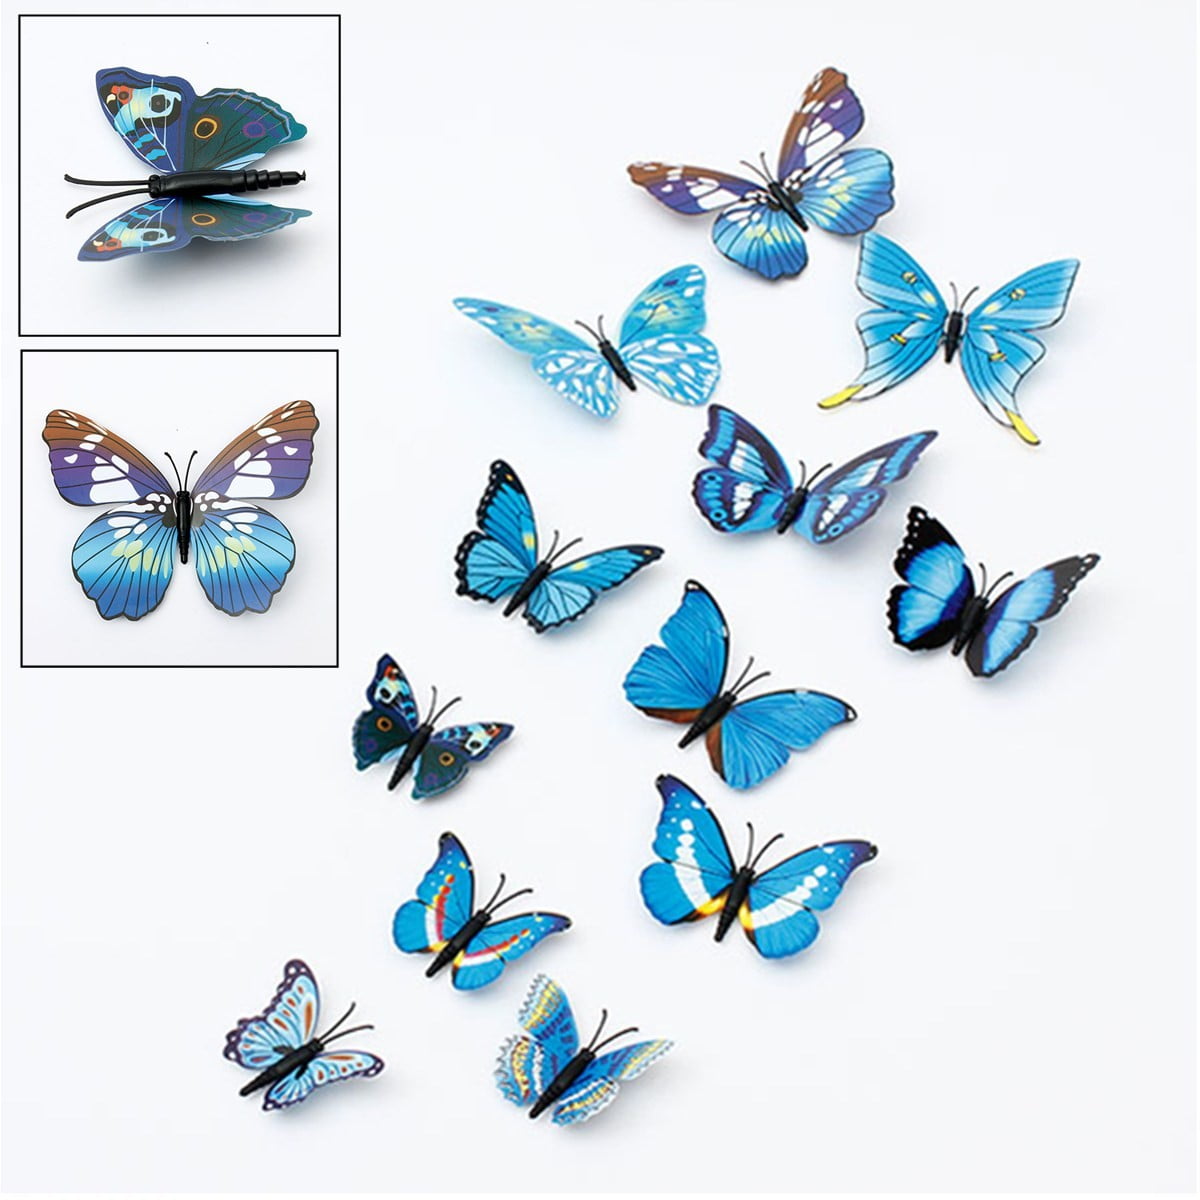 12 X 3D Butterflies Wall Fridge Magnets Stickers Home Decal Art Decor Green/Blue 